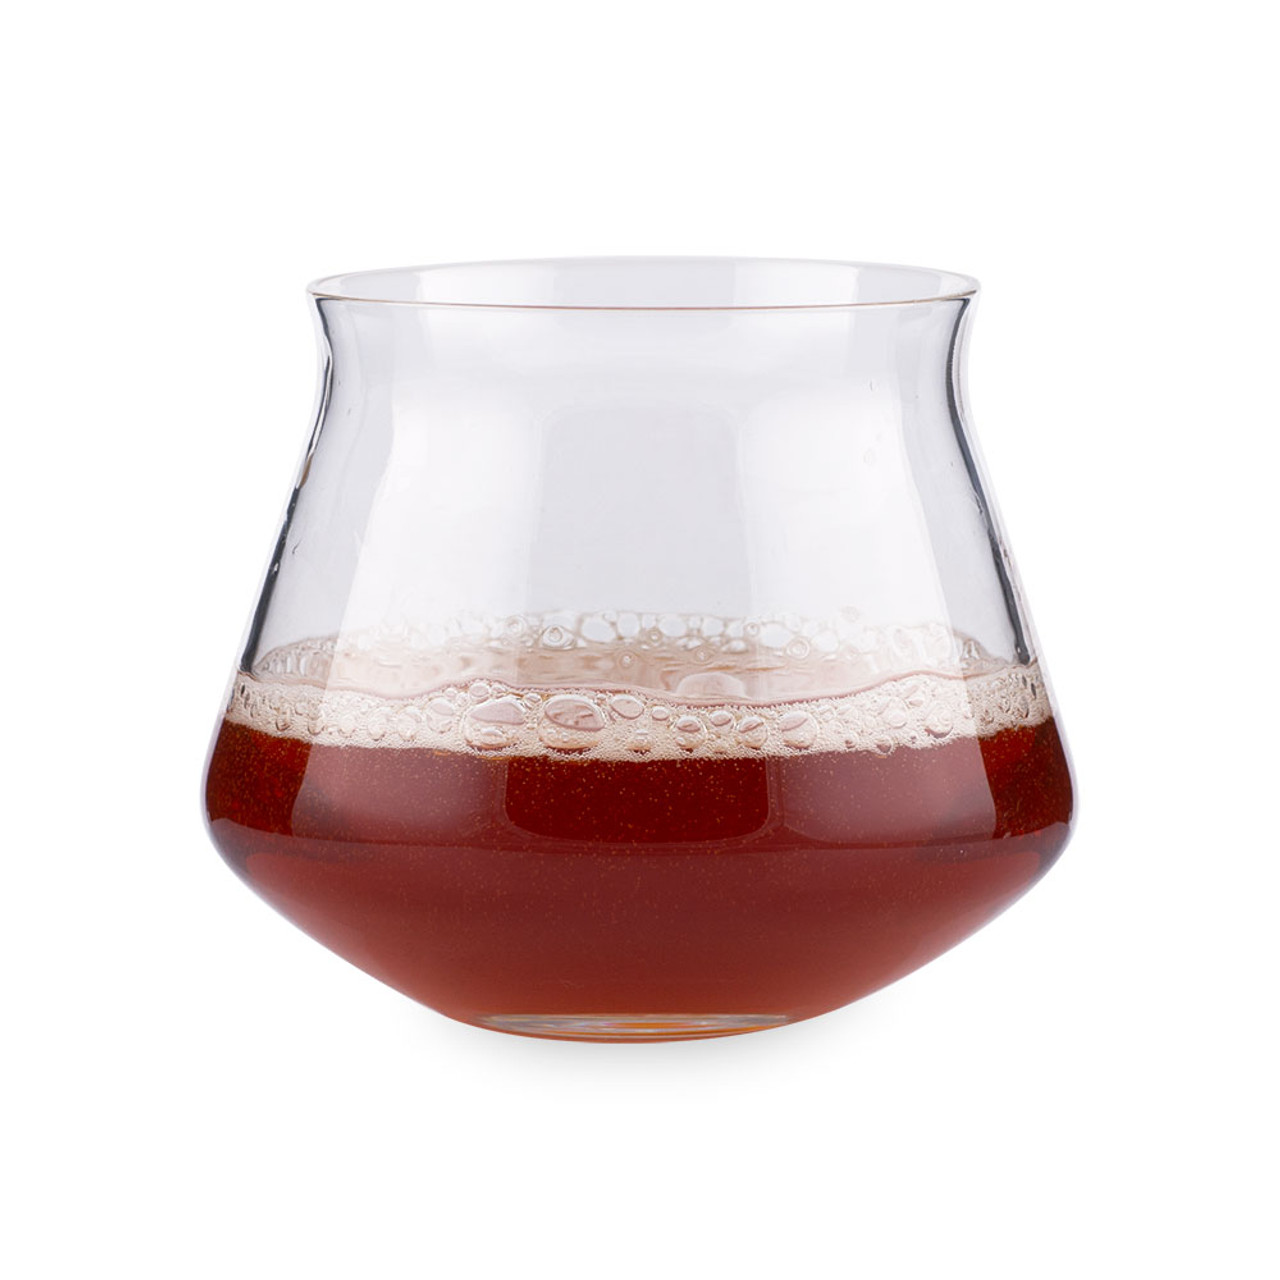 Download Rastal Teku Tasting Glass Ideal For Beer Spirits Wine Cider More 6 5 Oz PSD Mockup Templates